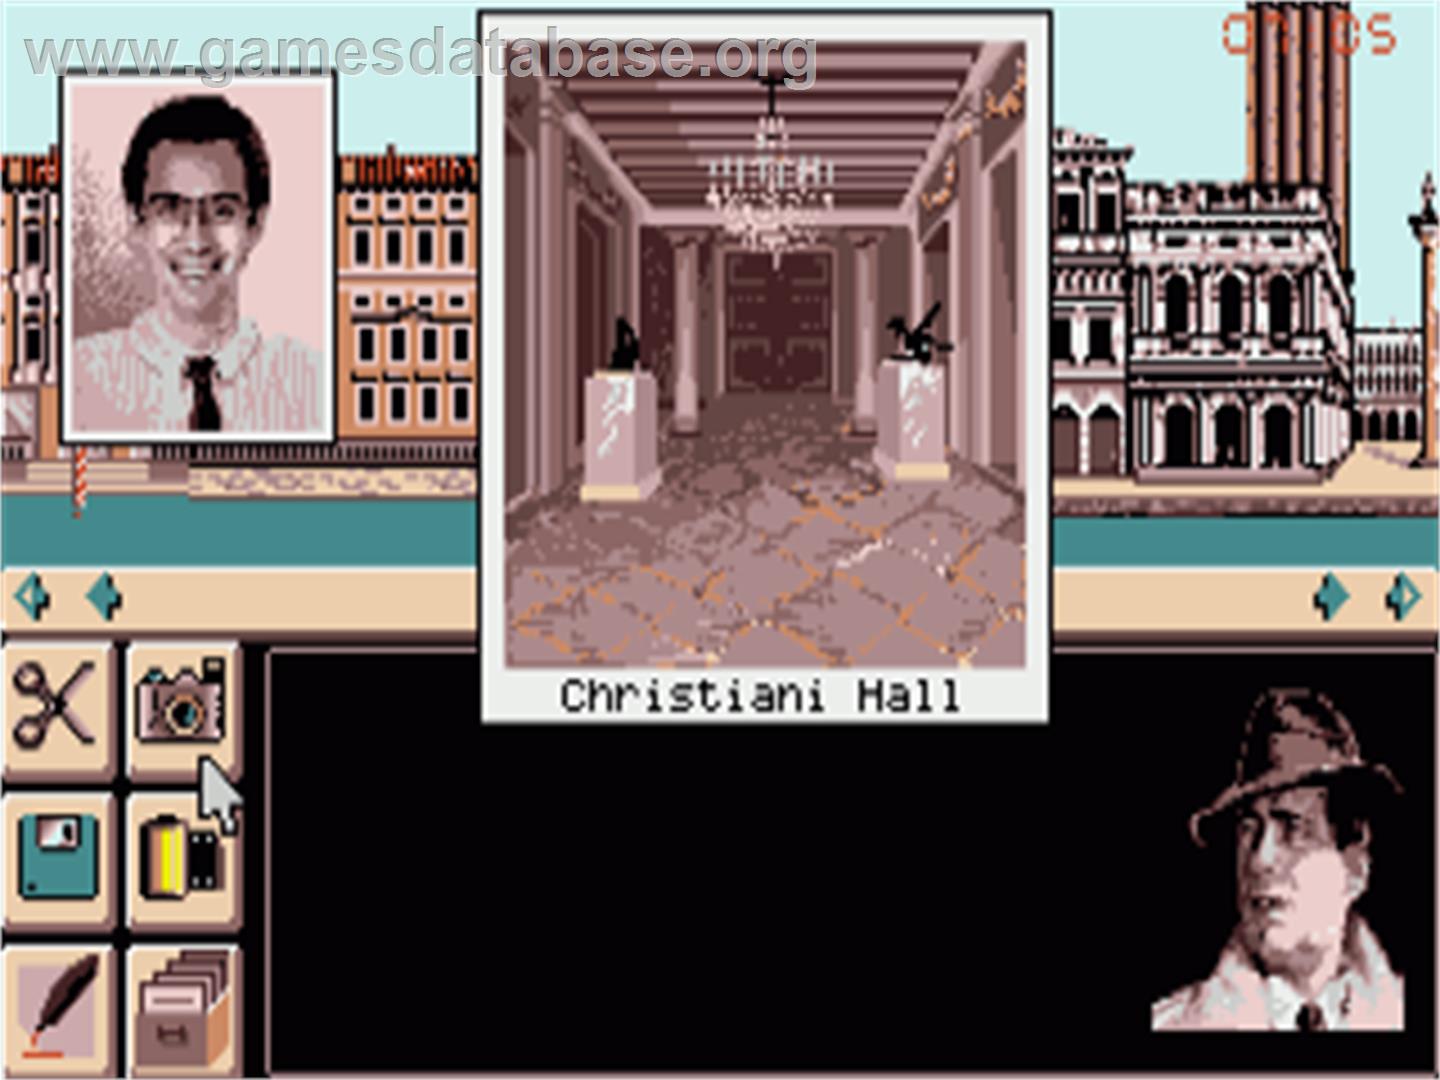 Murders in Venice - Commodore Amiga - Artwork - In Game